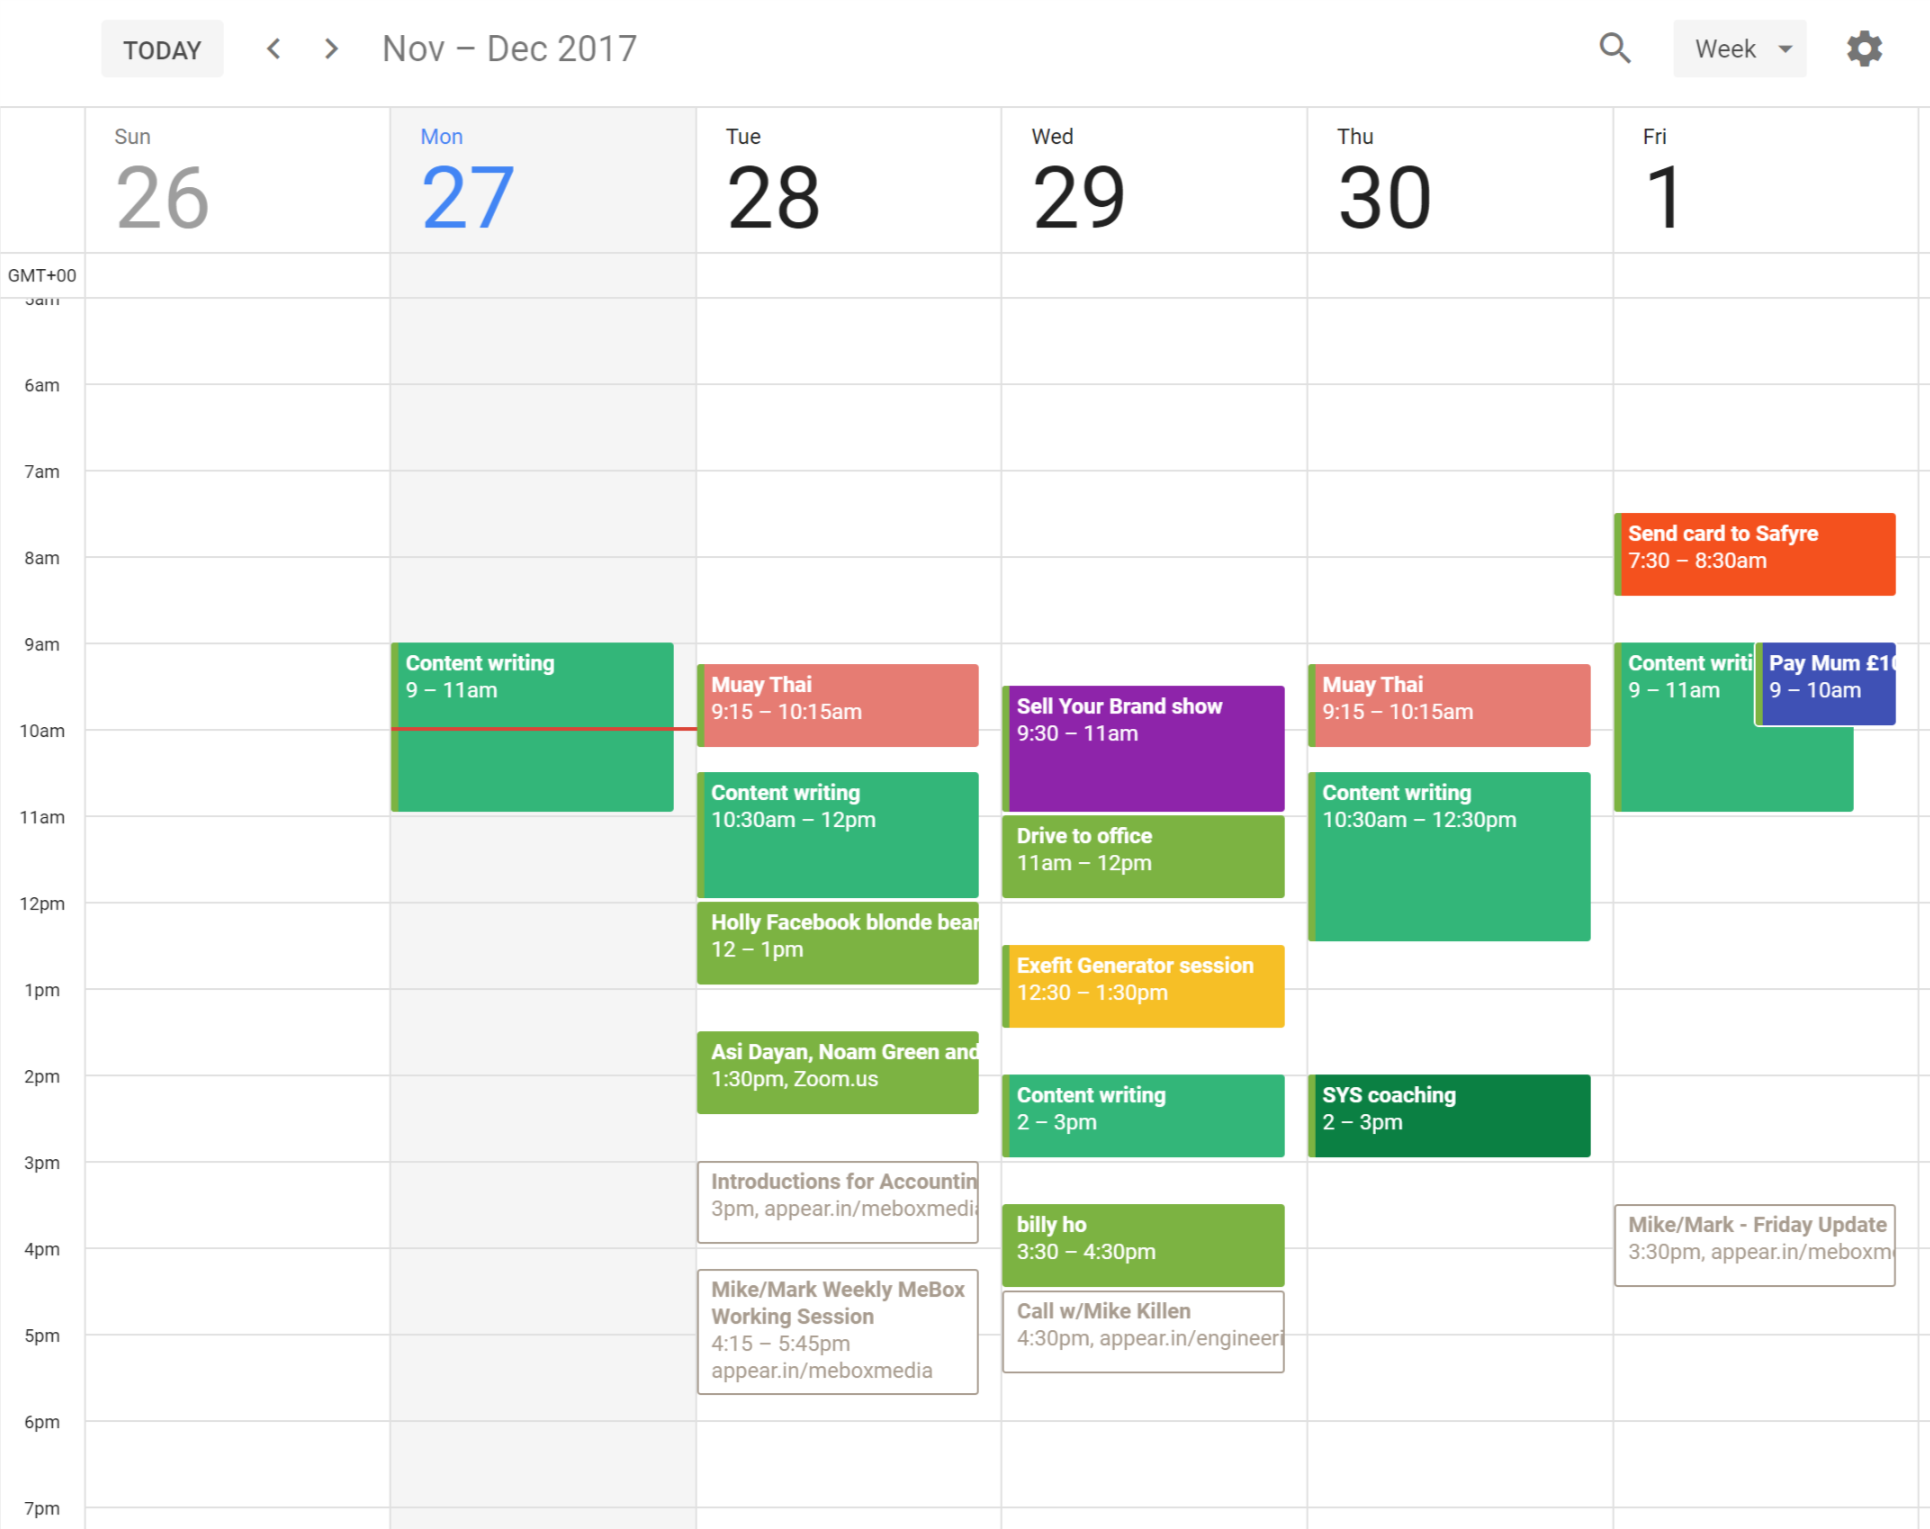 [SNEAK PEAK] Read my entire week’s schedule to see how I plan my weeks